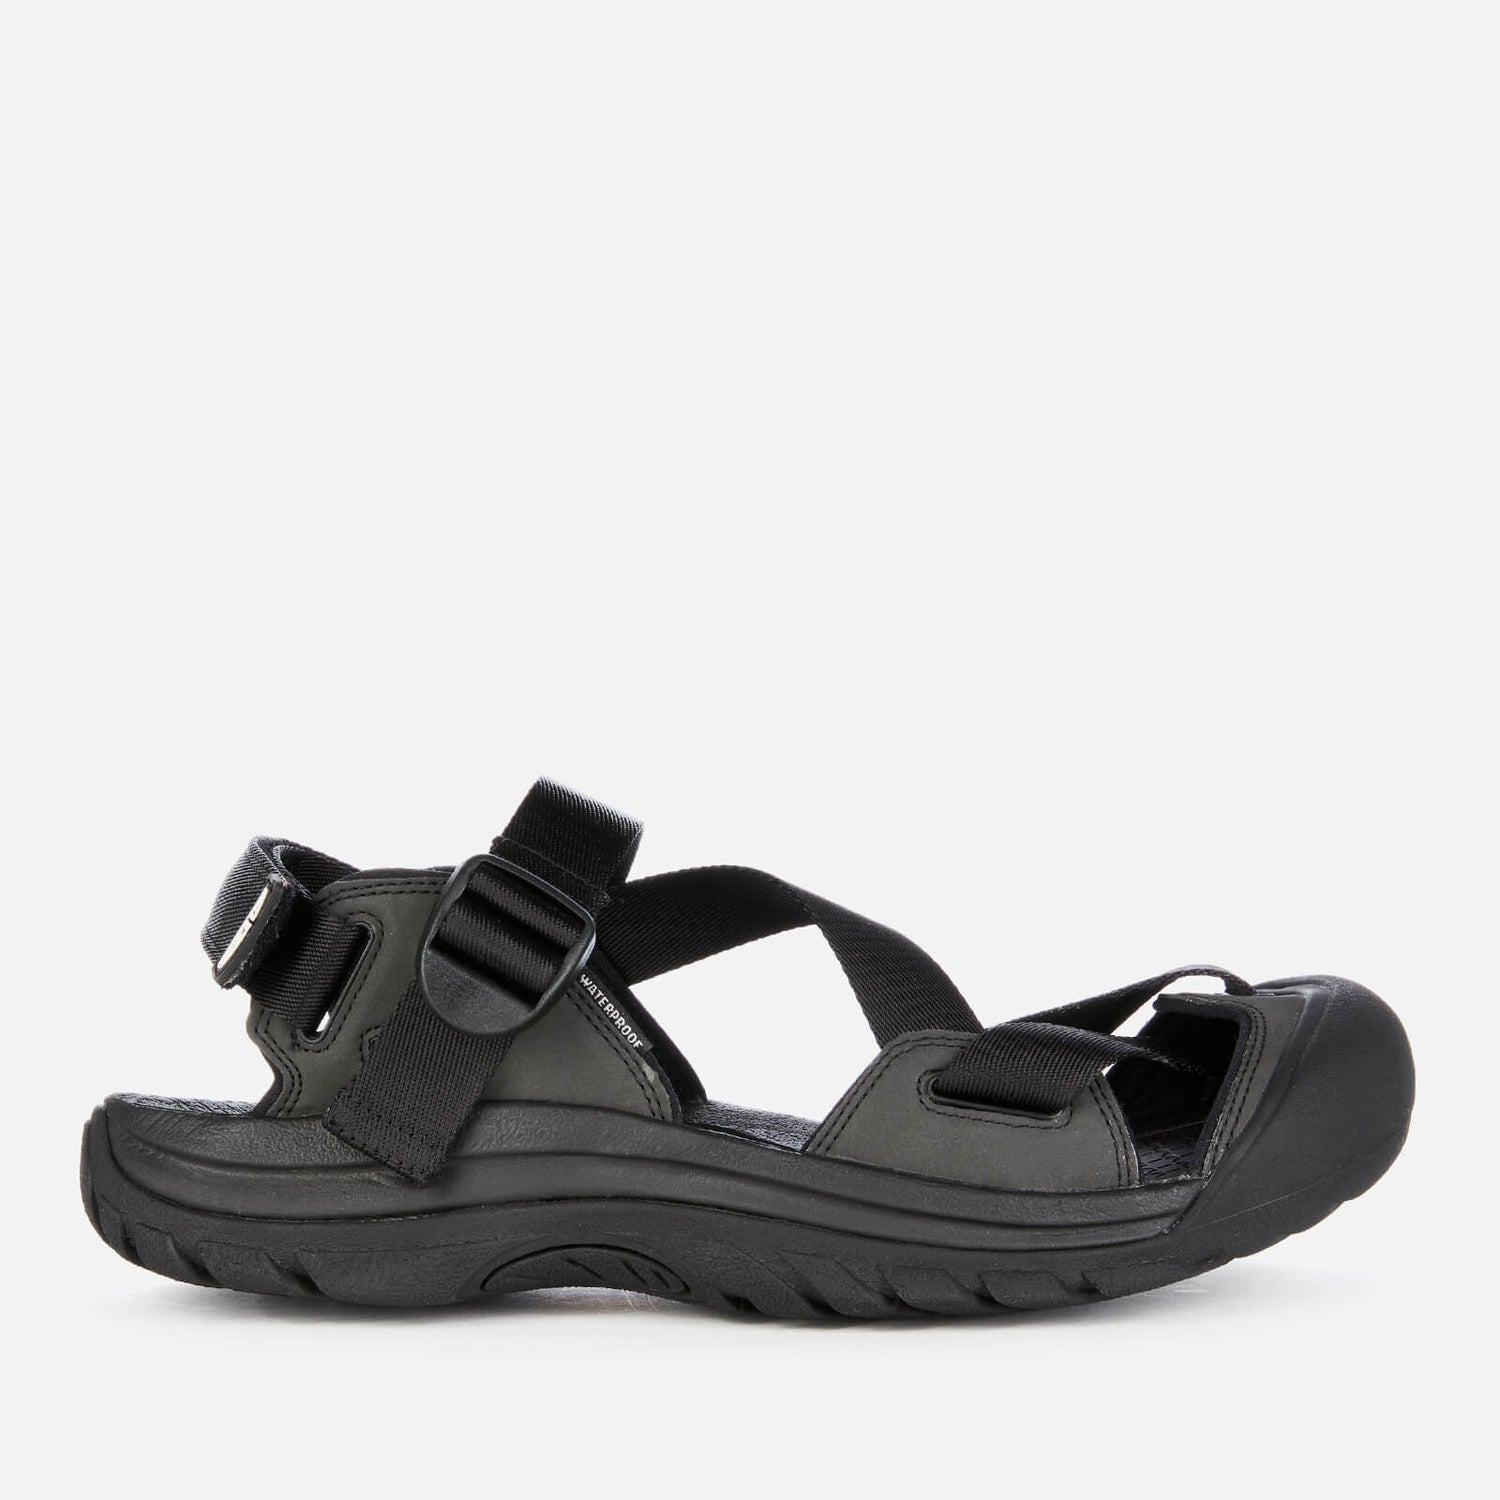 Keen Men's Zerraport 11 Sandals - Black/Black